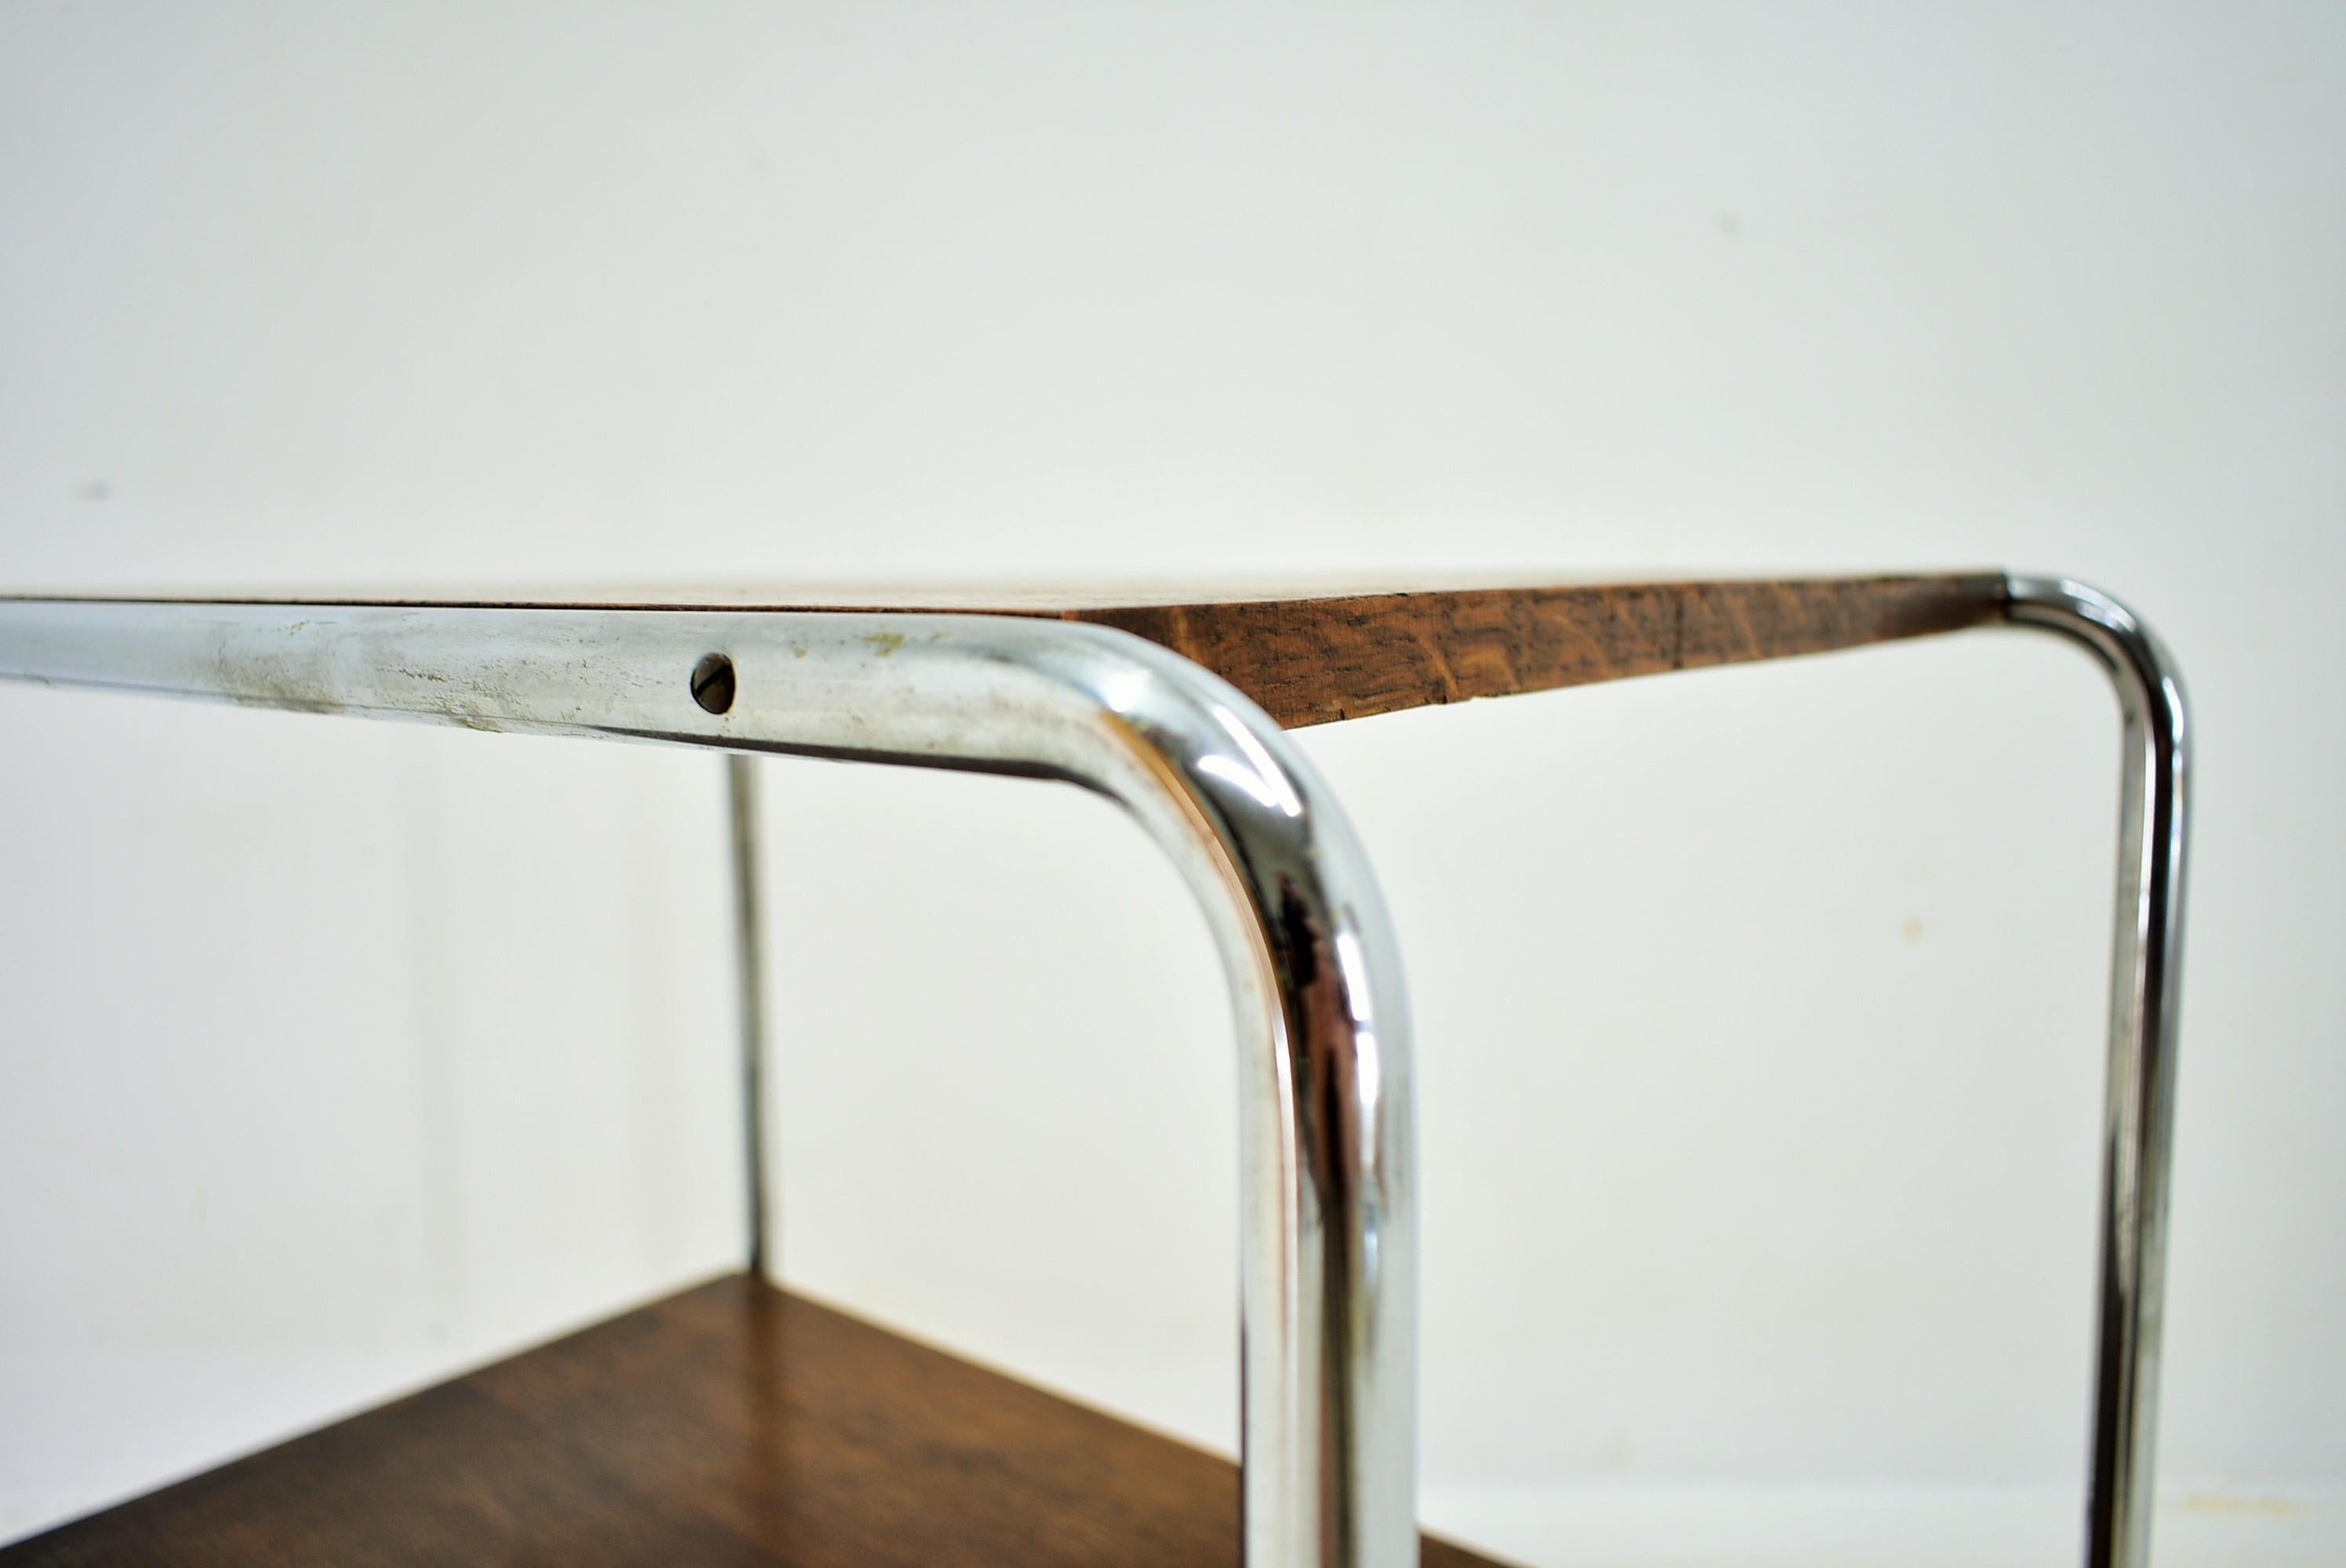 Bauhaus Chrome Table by Marcel Breuer for Mucke Melder, 1930s For Sale 1